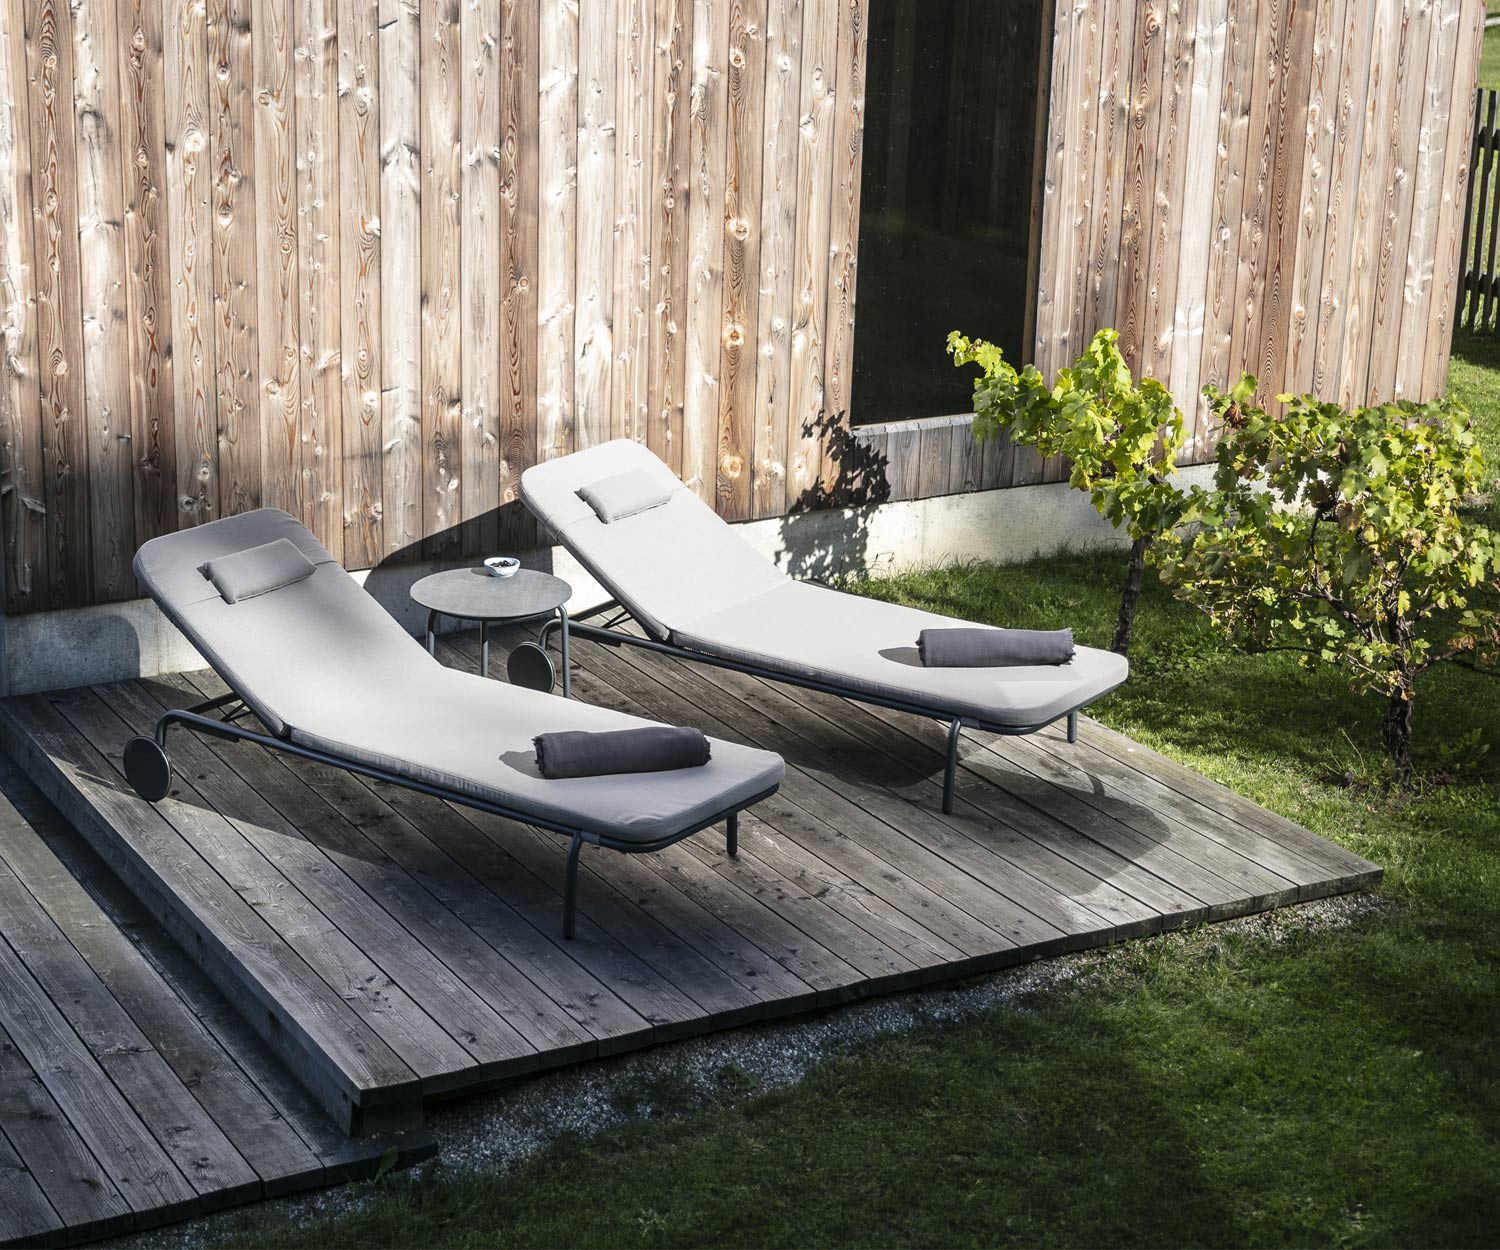 Moderne Todus Starling Design ligstoel met donkergrijze stoffen bekleding bij het zwembad